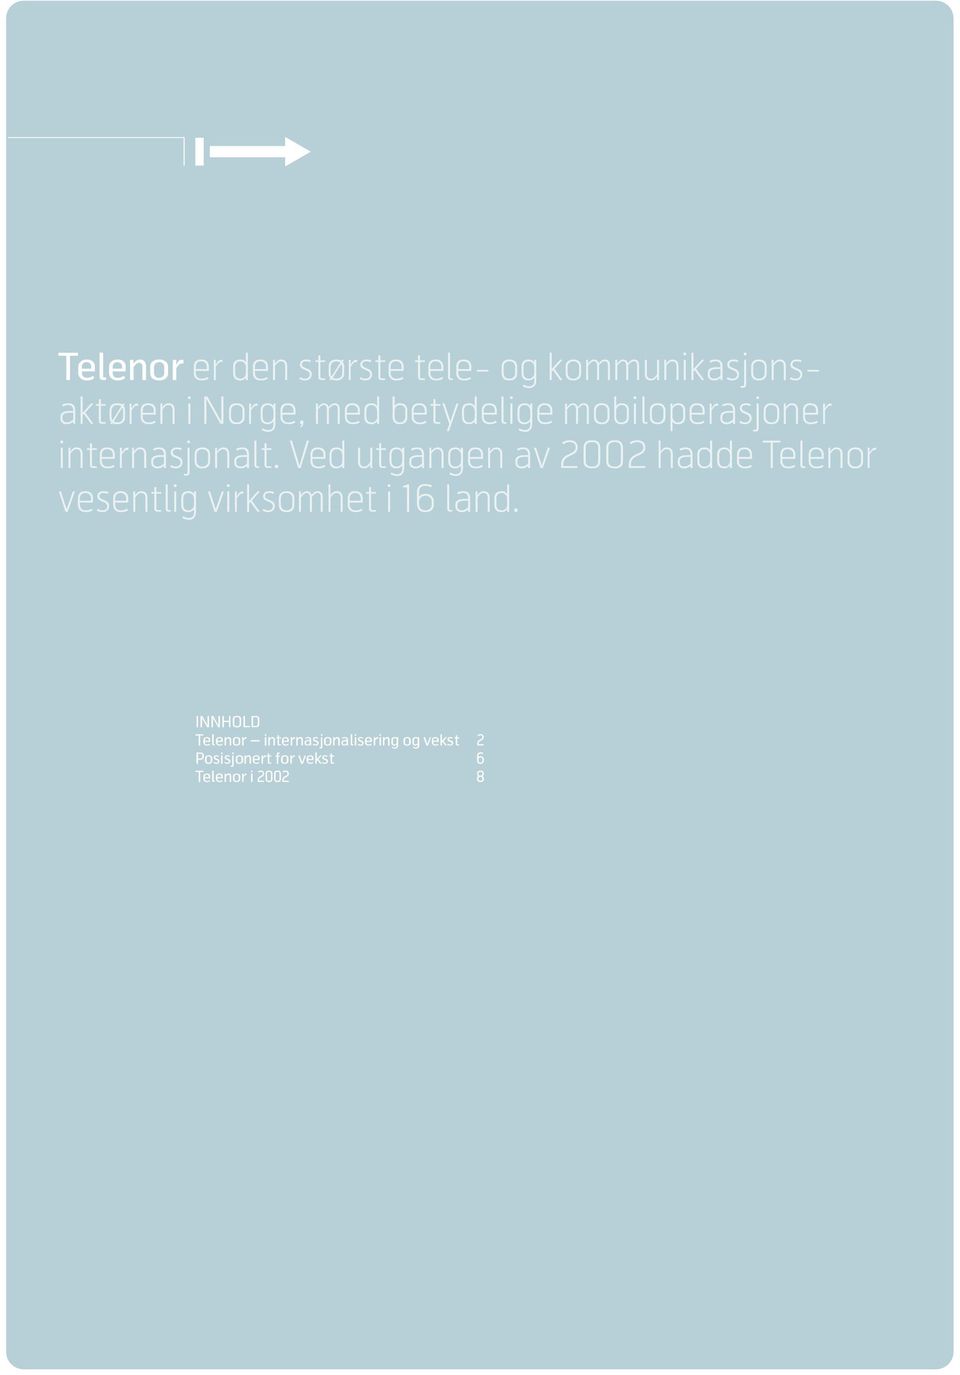 Ved utgangen av 2002 hadde Telenor vesentlig virksomhet i 16 land.